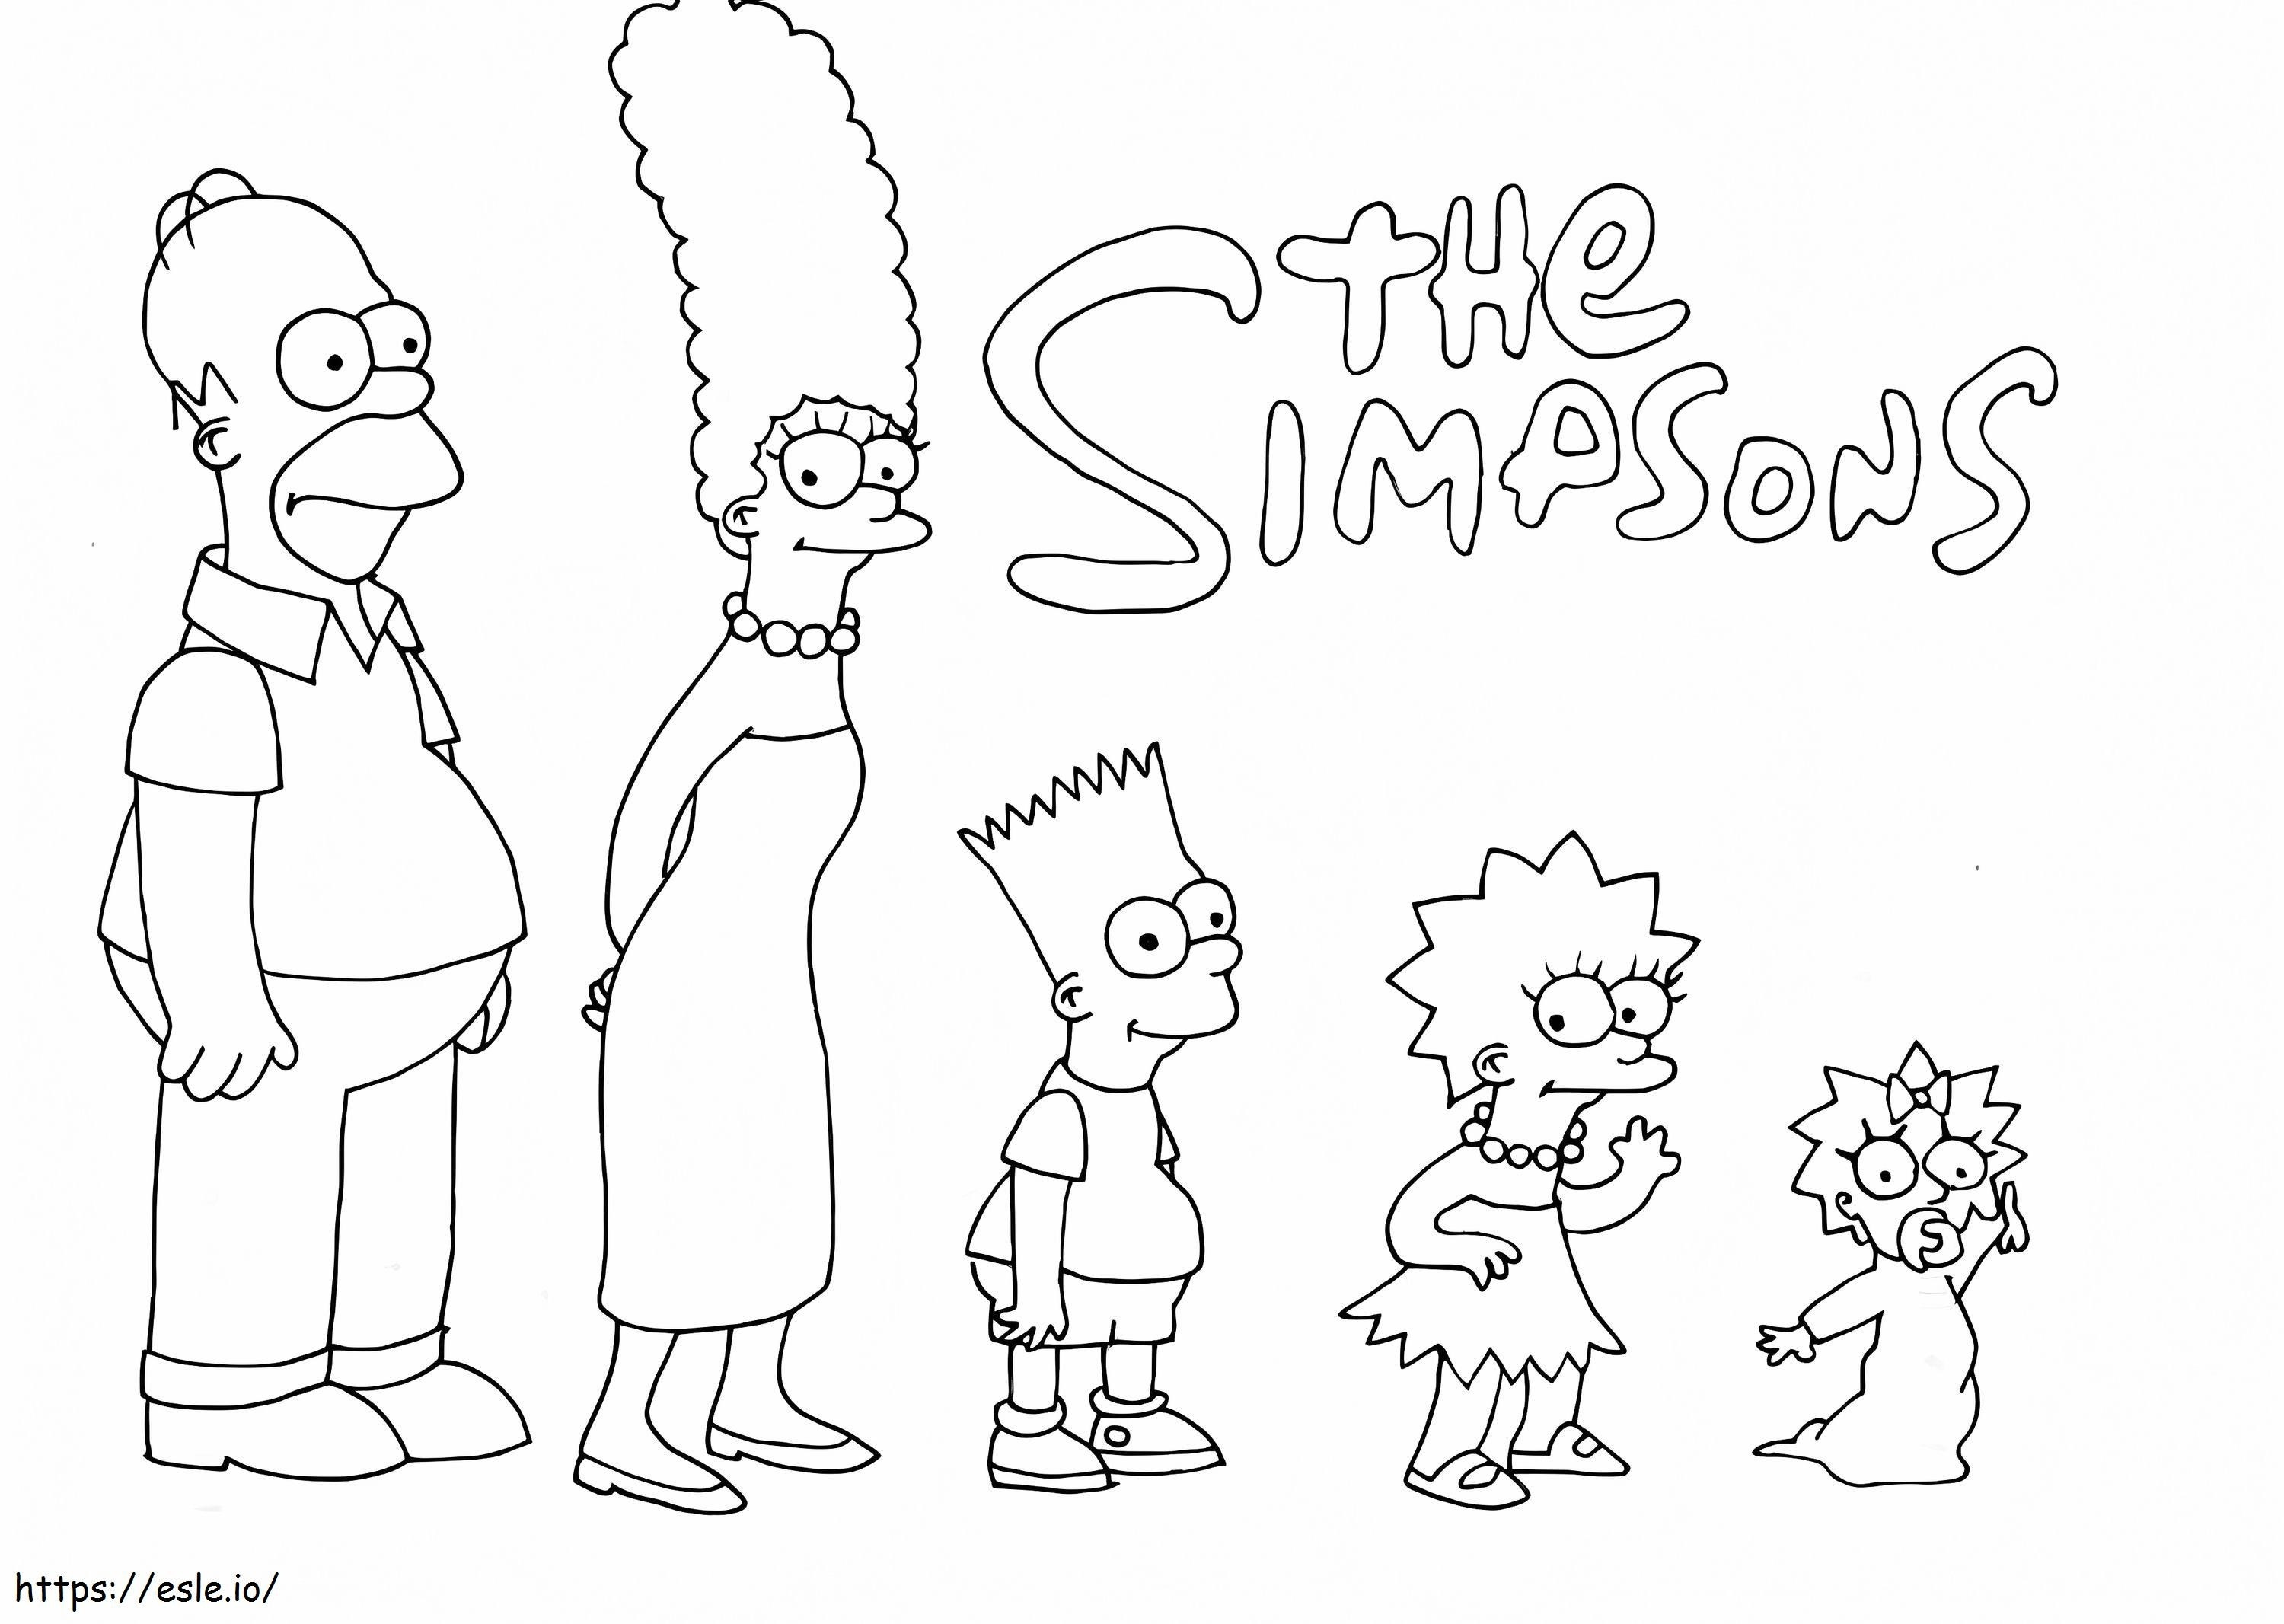 Die süßen Simpsons ausmalbilder